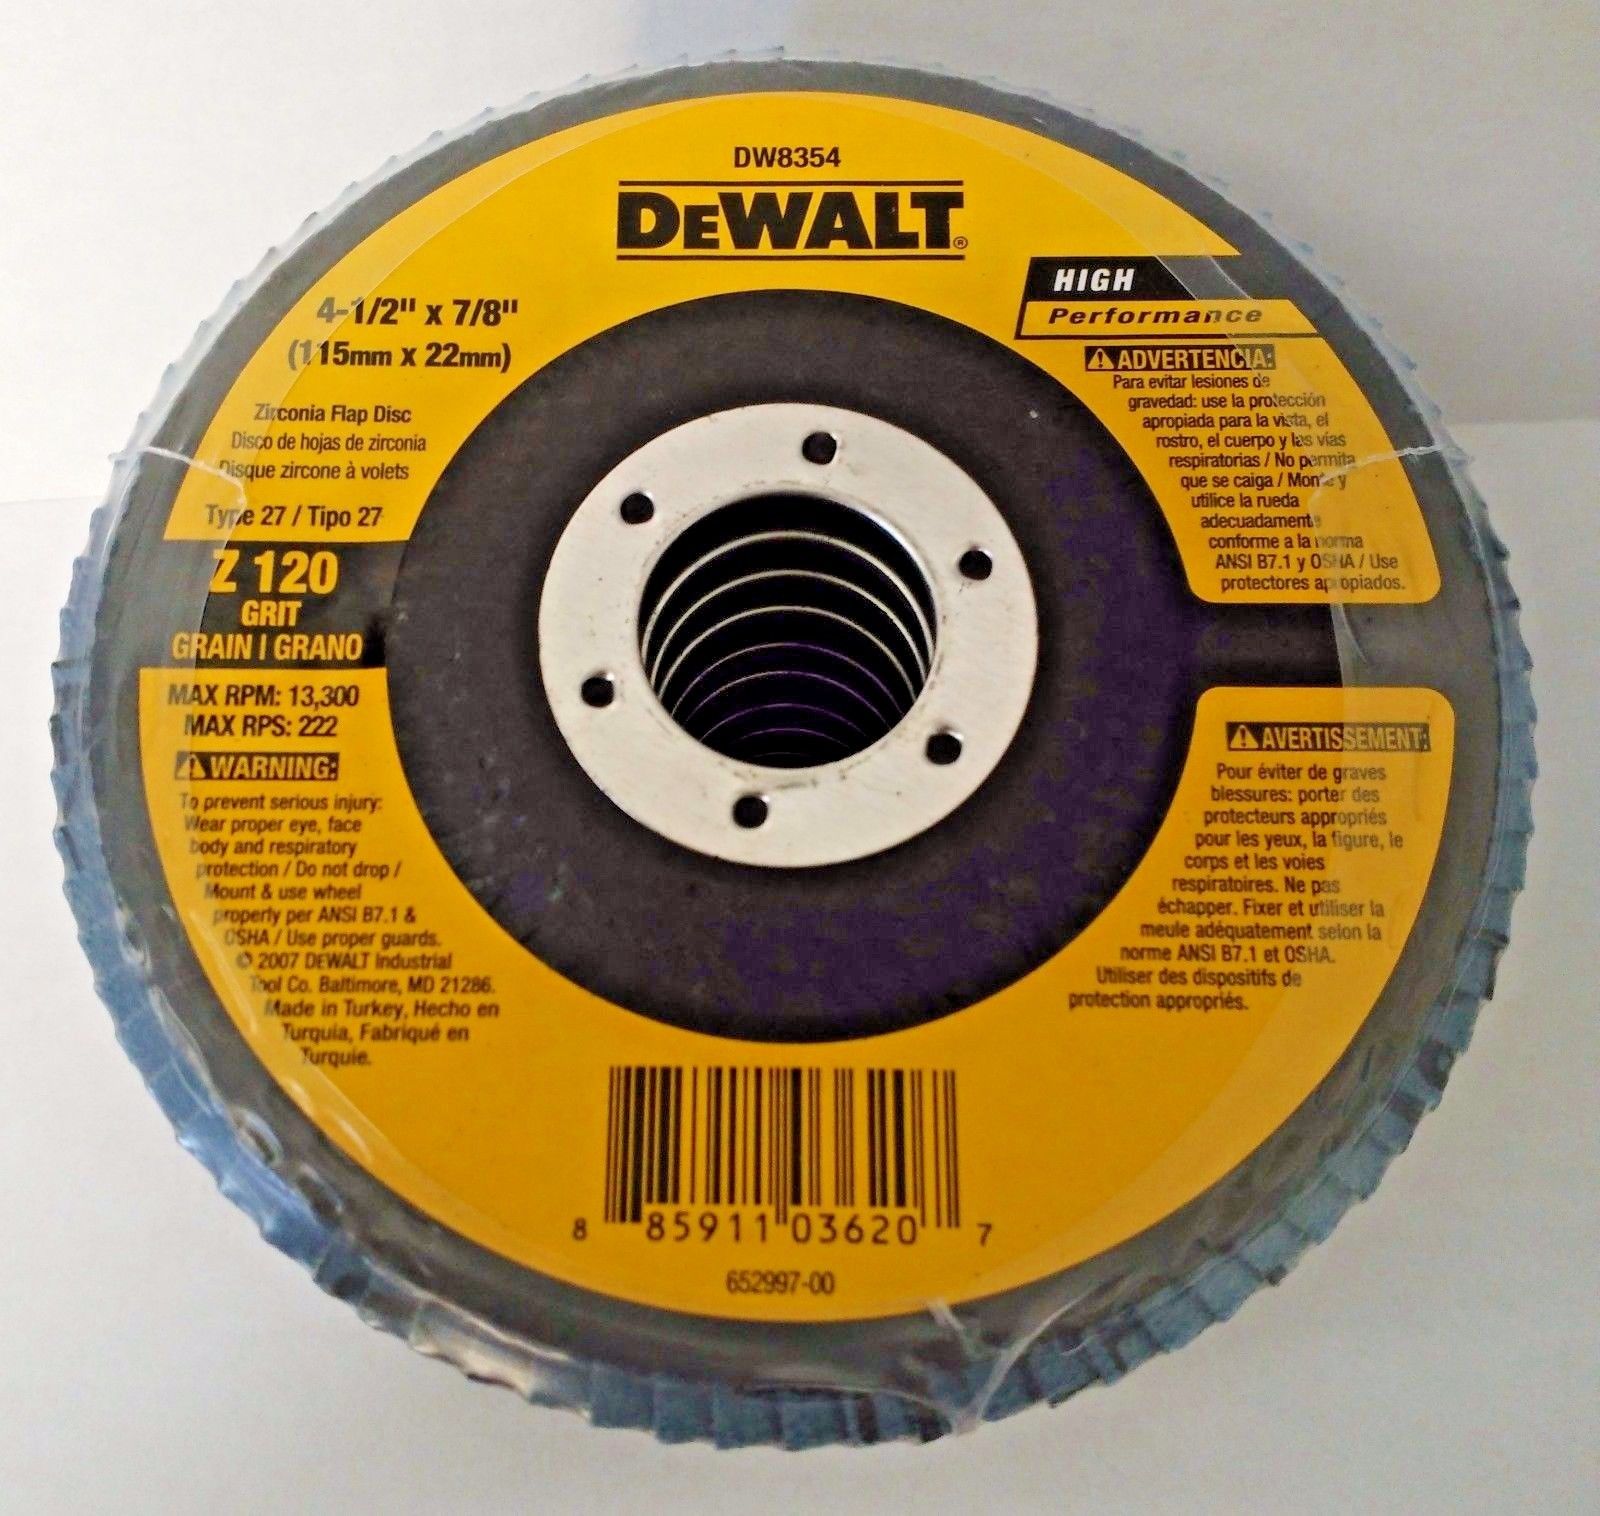 DeWalt DW8354 4-1/2" x 7/8" Zirconia 120 Grit Flap Disc 10 Pack